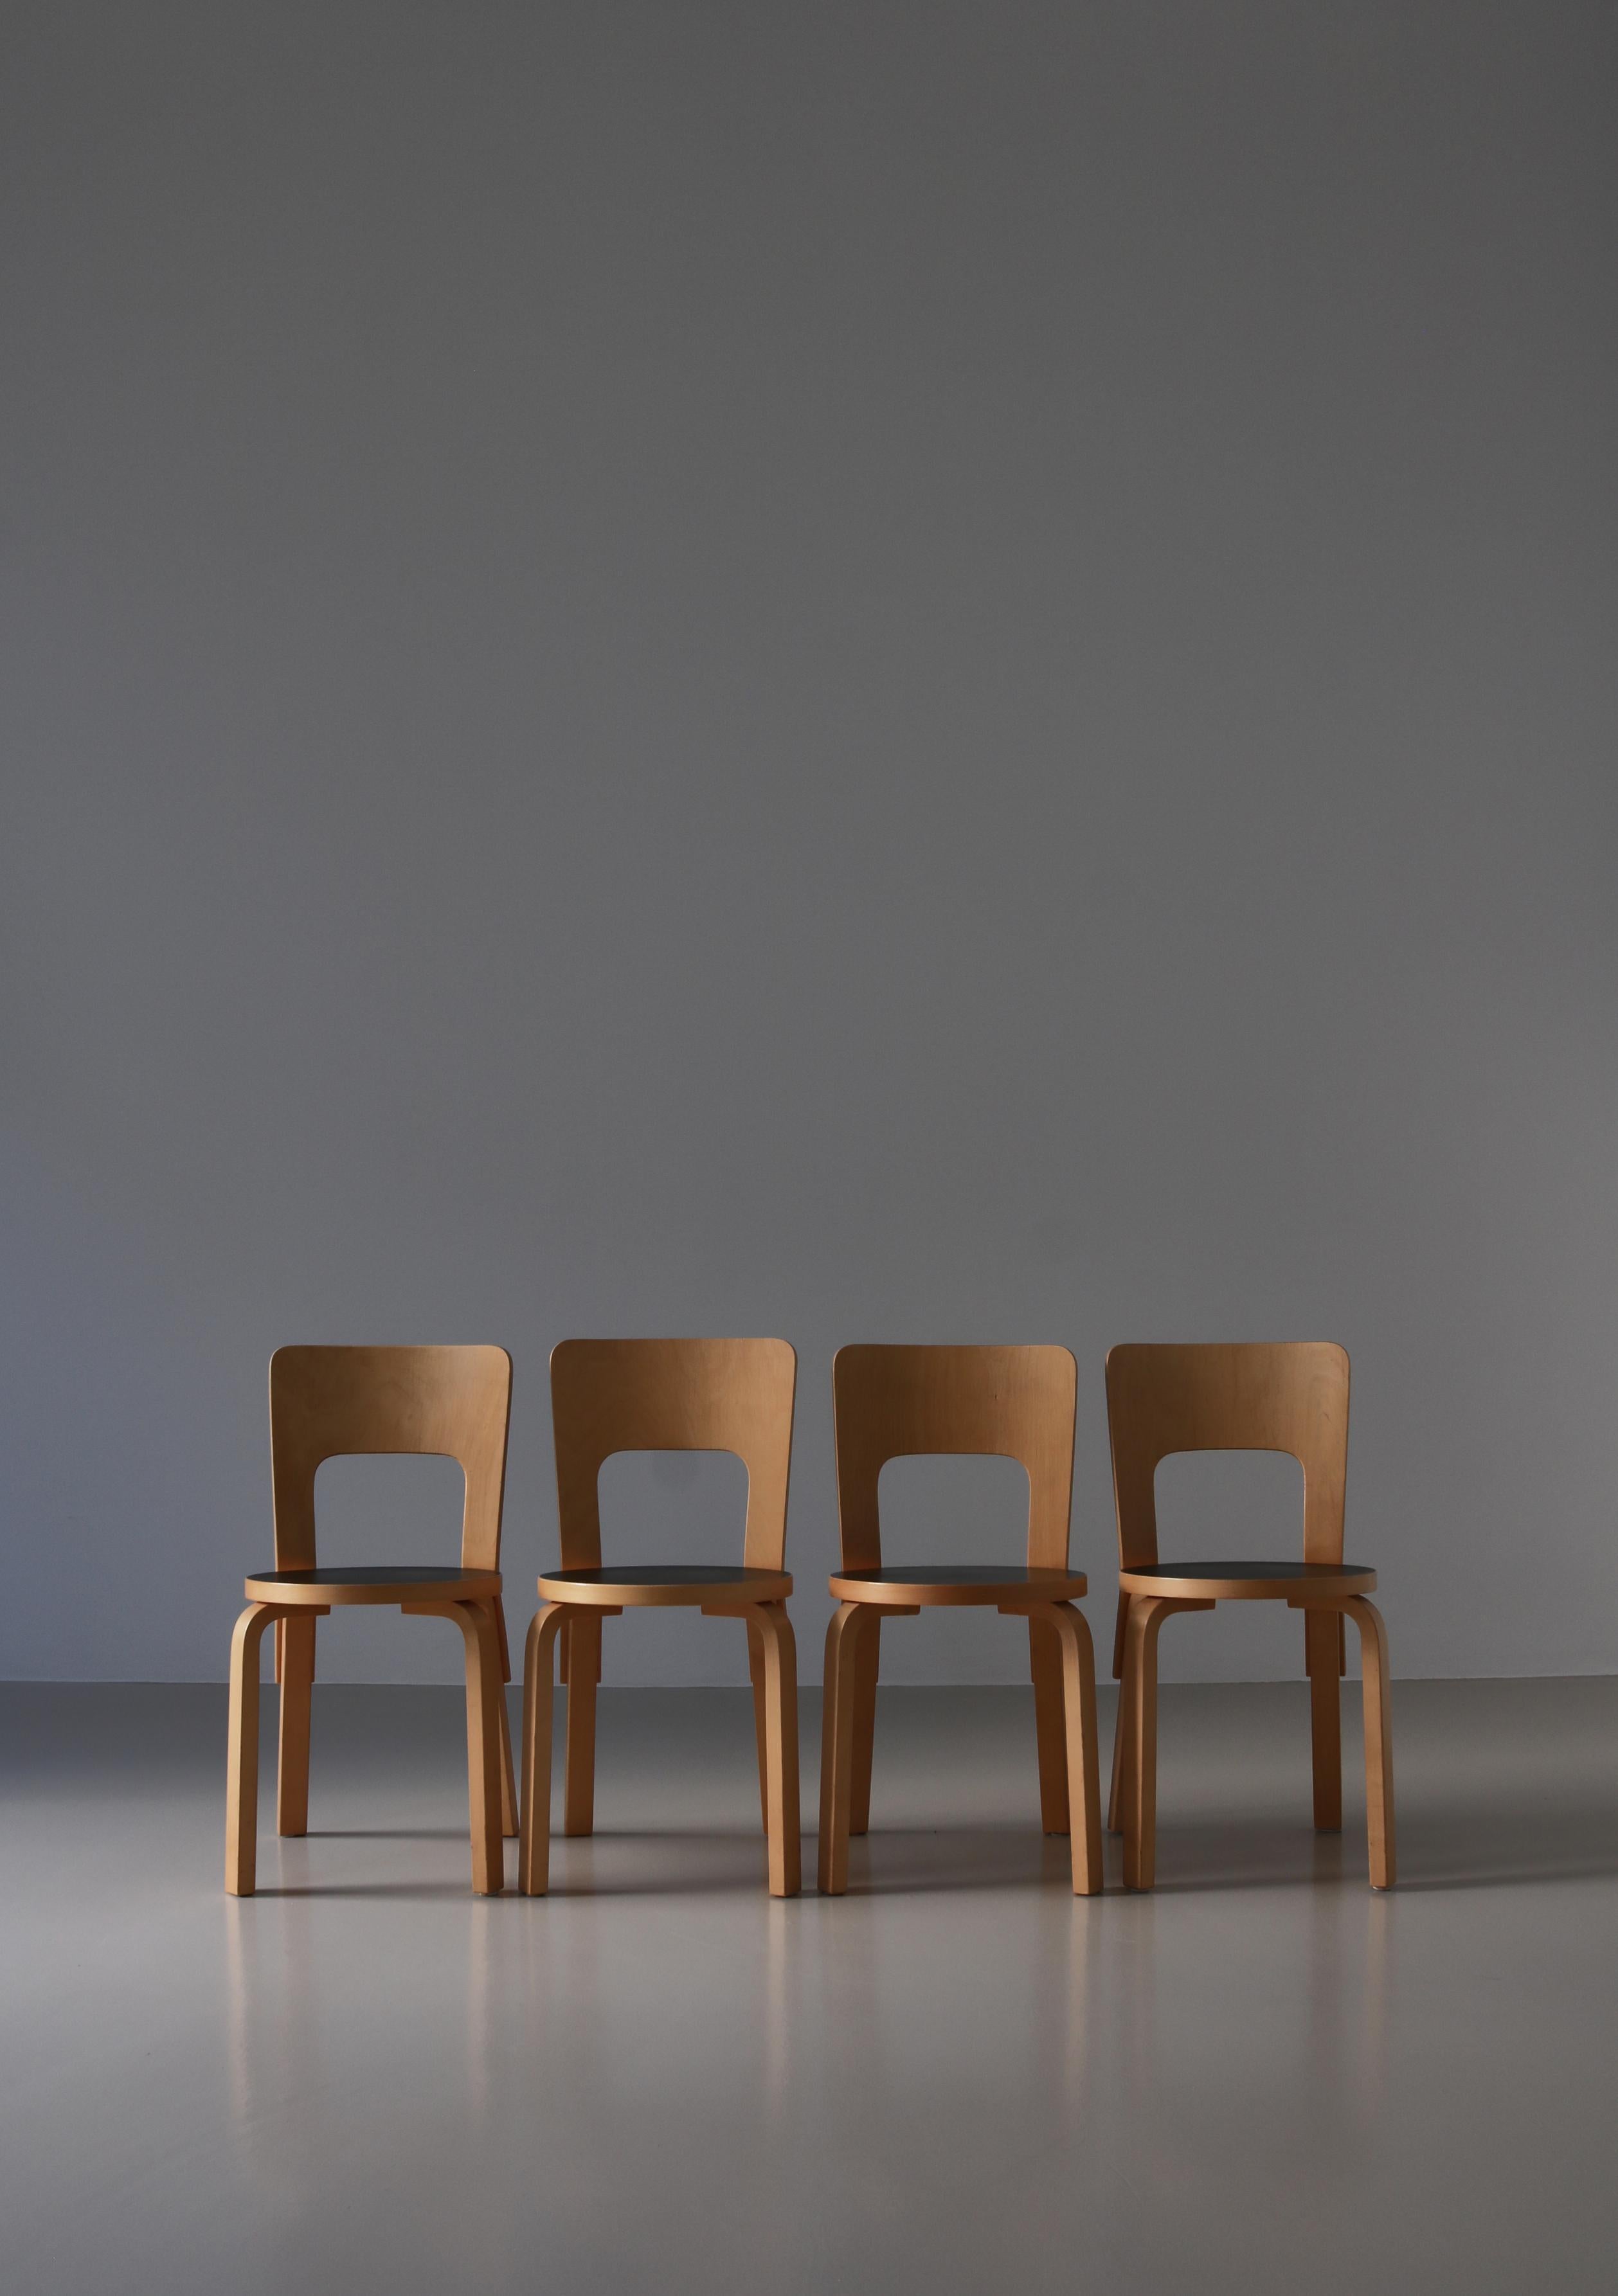 Ensemble de chaises de production vintage modèle 66 d'Alvar Aalto réalisées dans les années 1960. Les chaises sont faites de bouleau stratifié et de linoléum noir et ont un bel éclat et une belle patine. Magnifiquement usé mais sans dommages